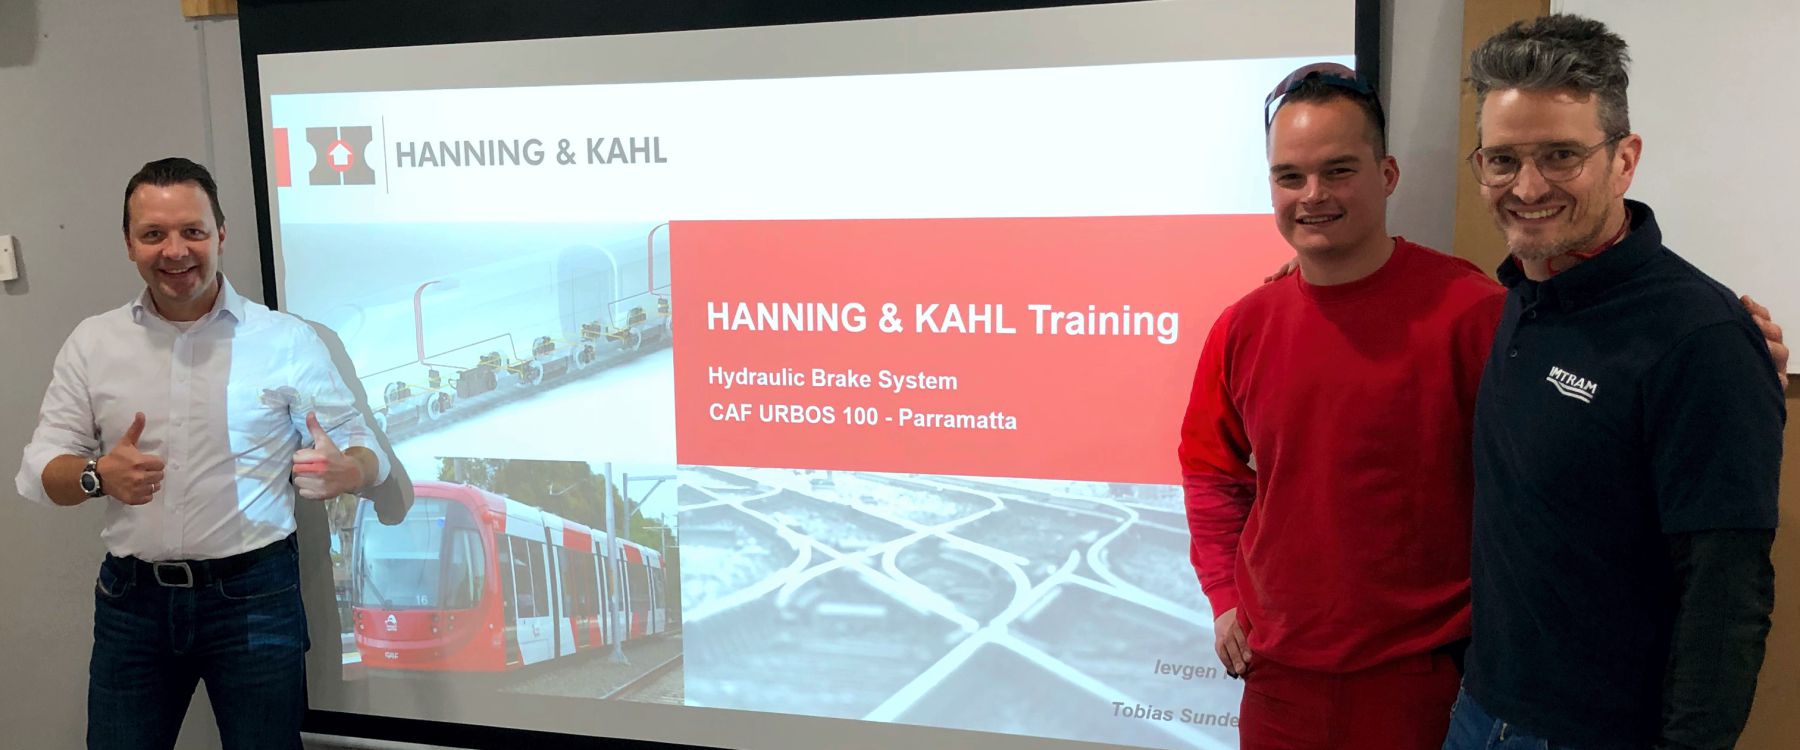 Hanning & Kahl CAF Urbos Training